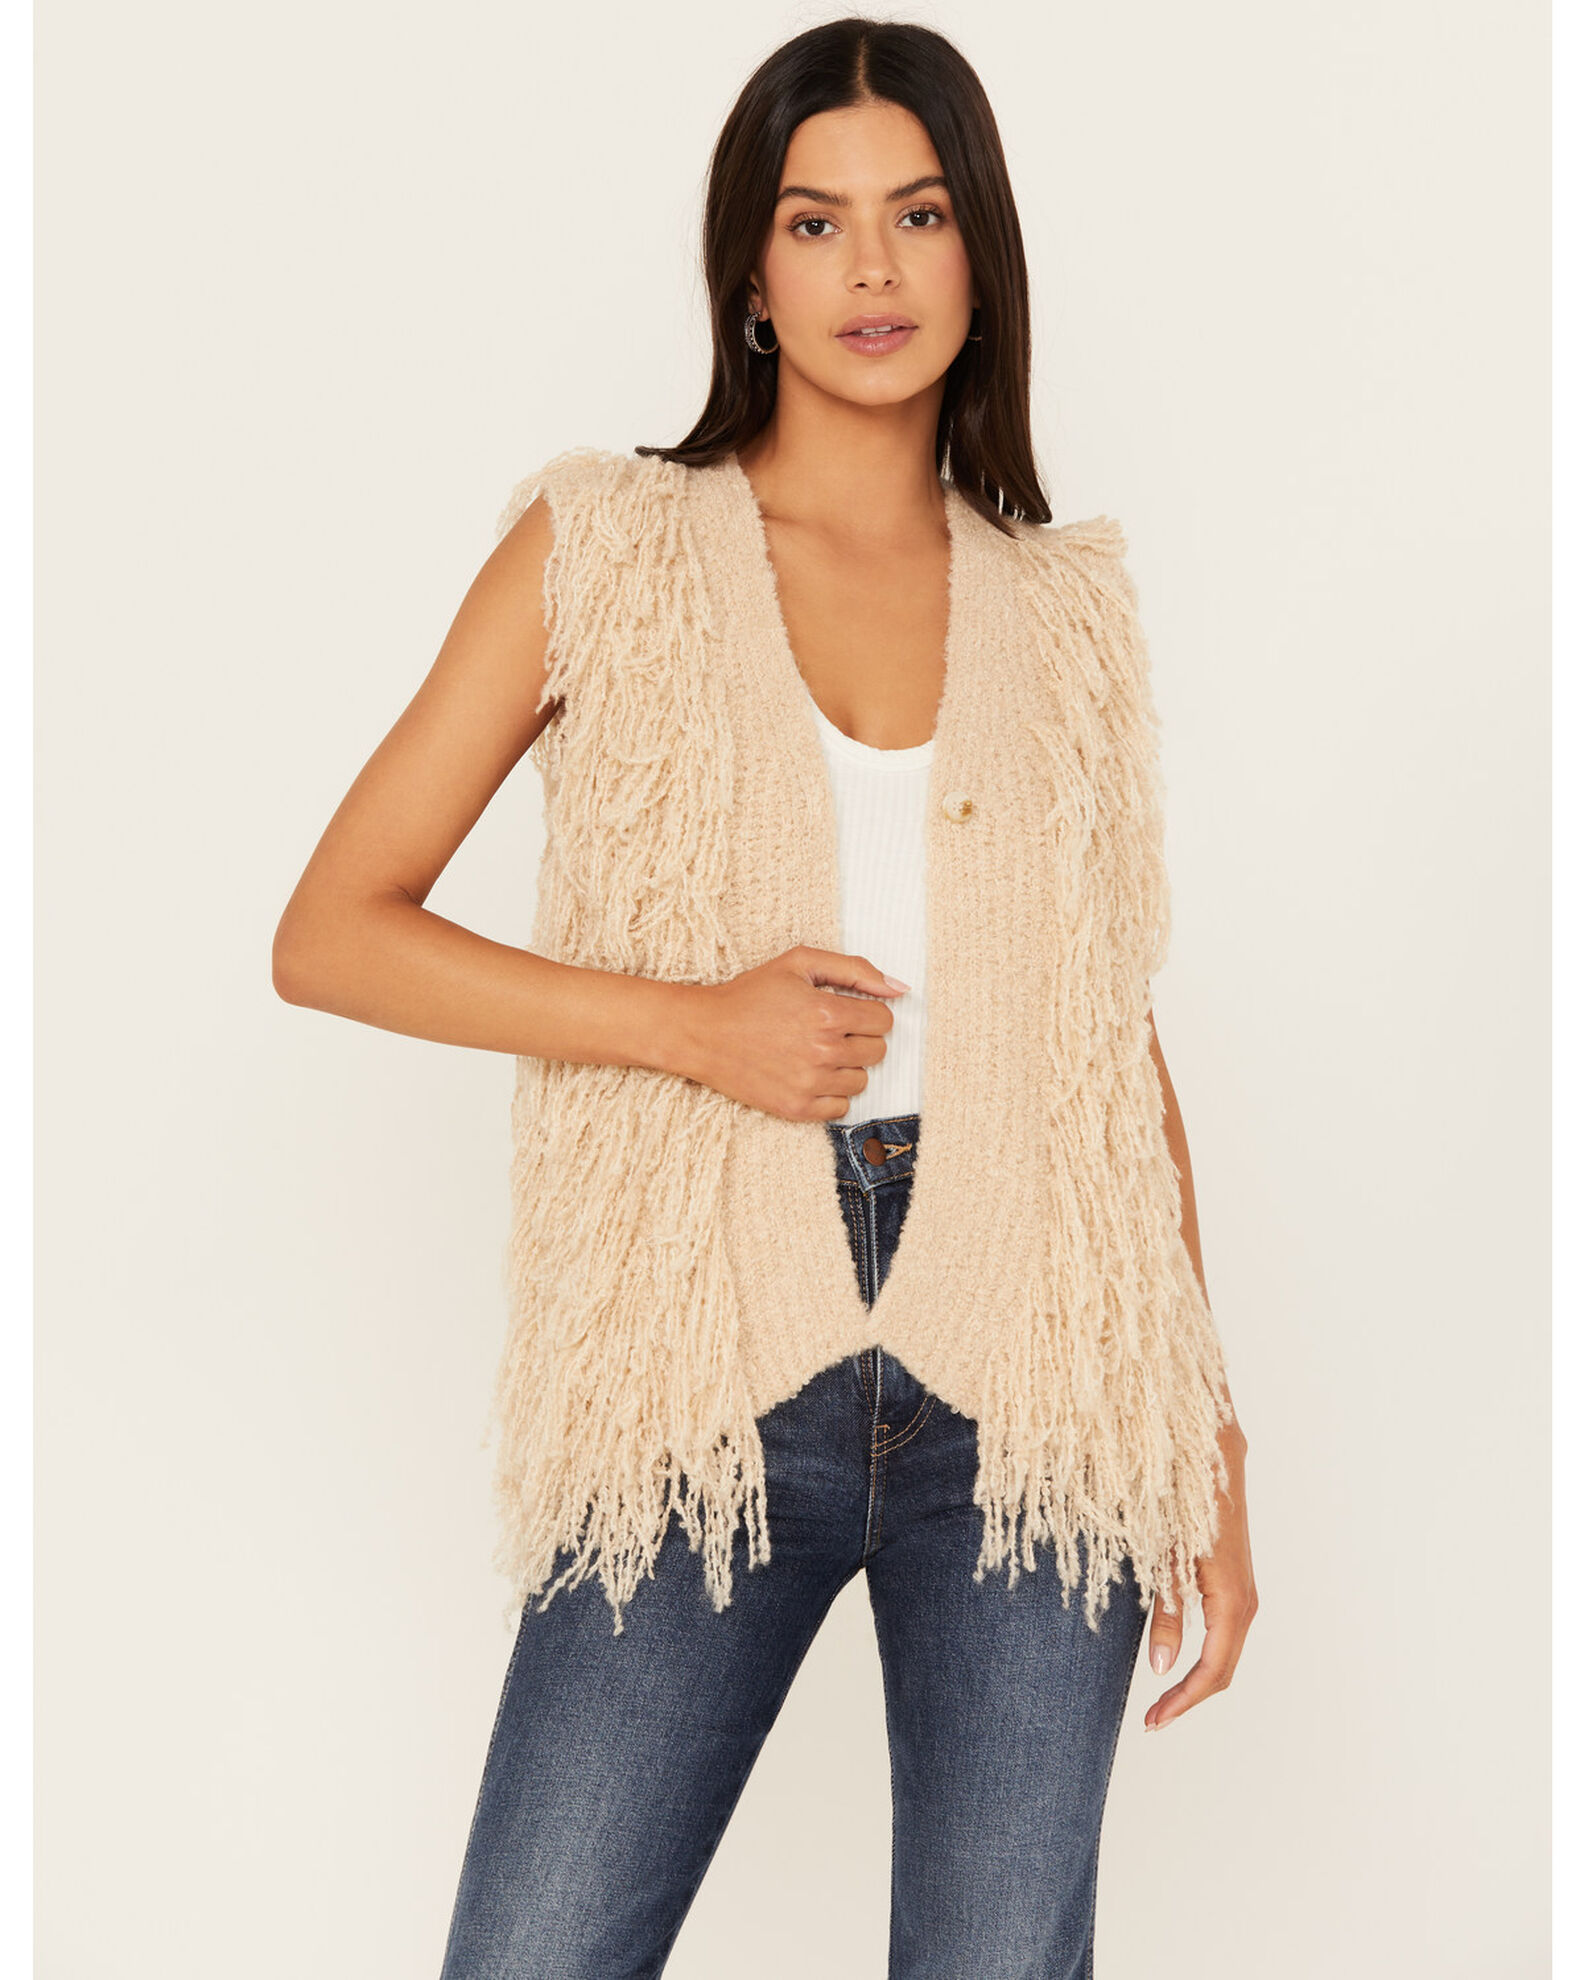 Mystree Women's Knit Fringe Sweater Vest